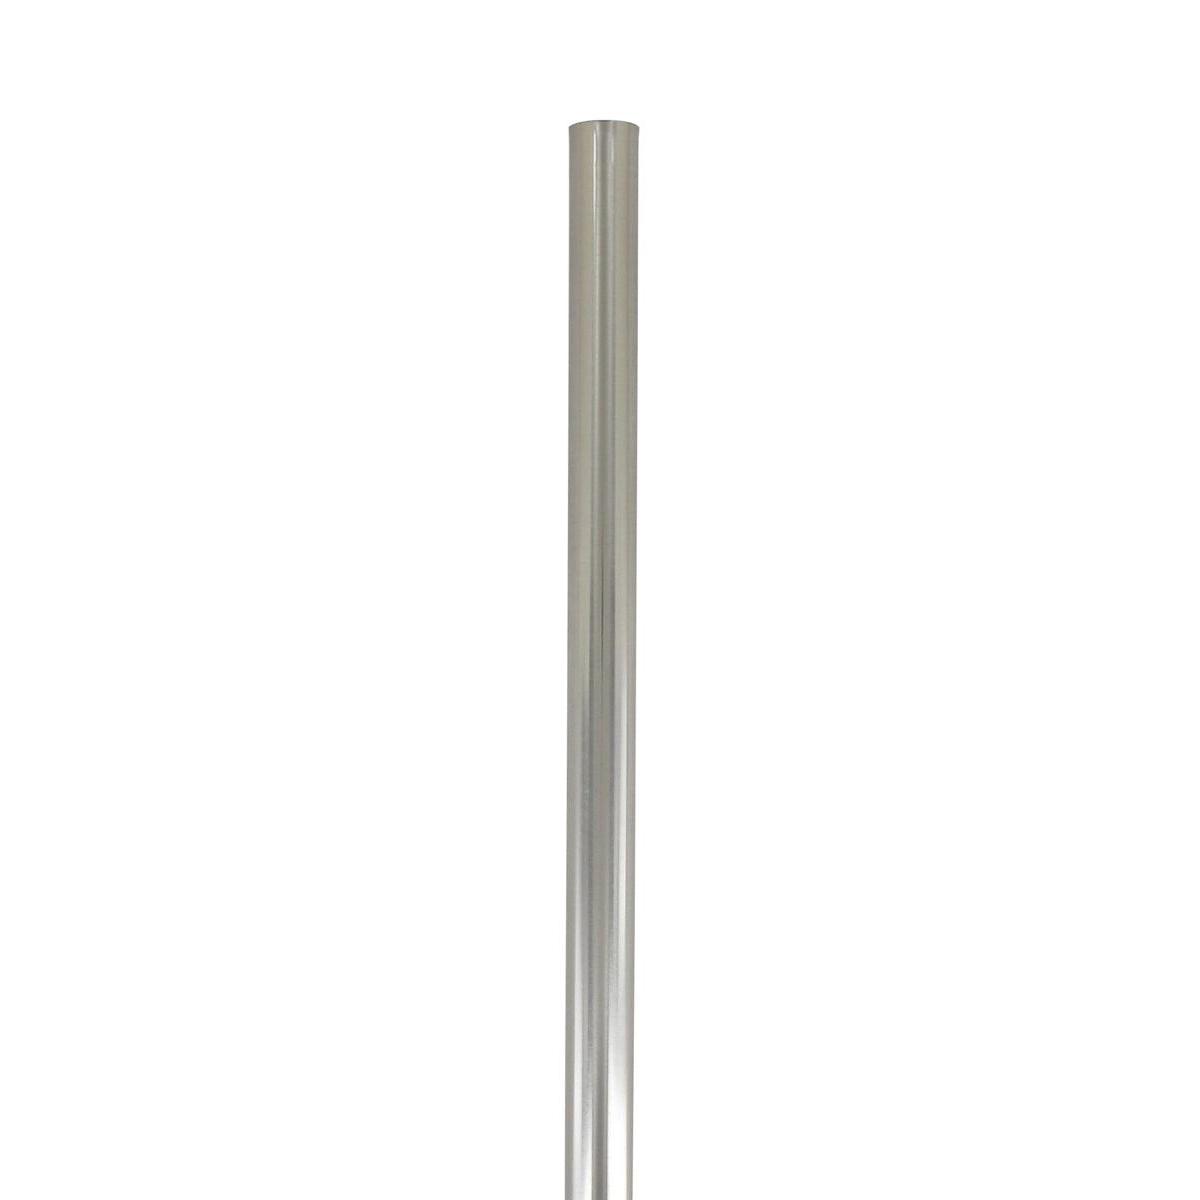 Tringle à rideaux autobloquante ronde blanche 60cm D 10mm - Centrakor